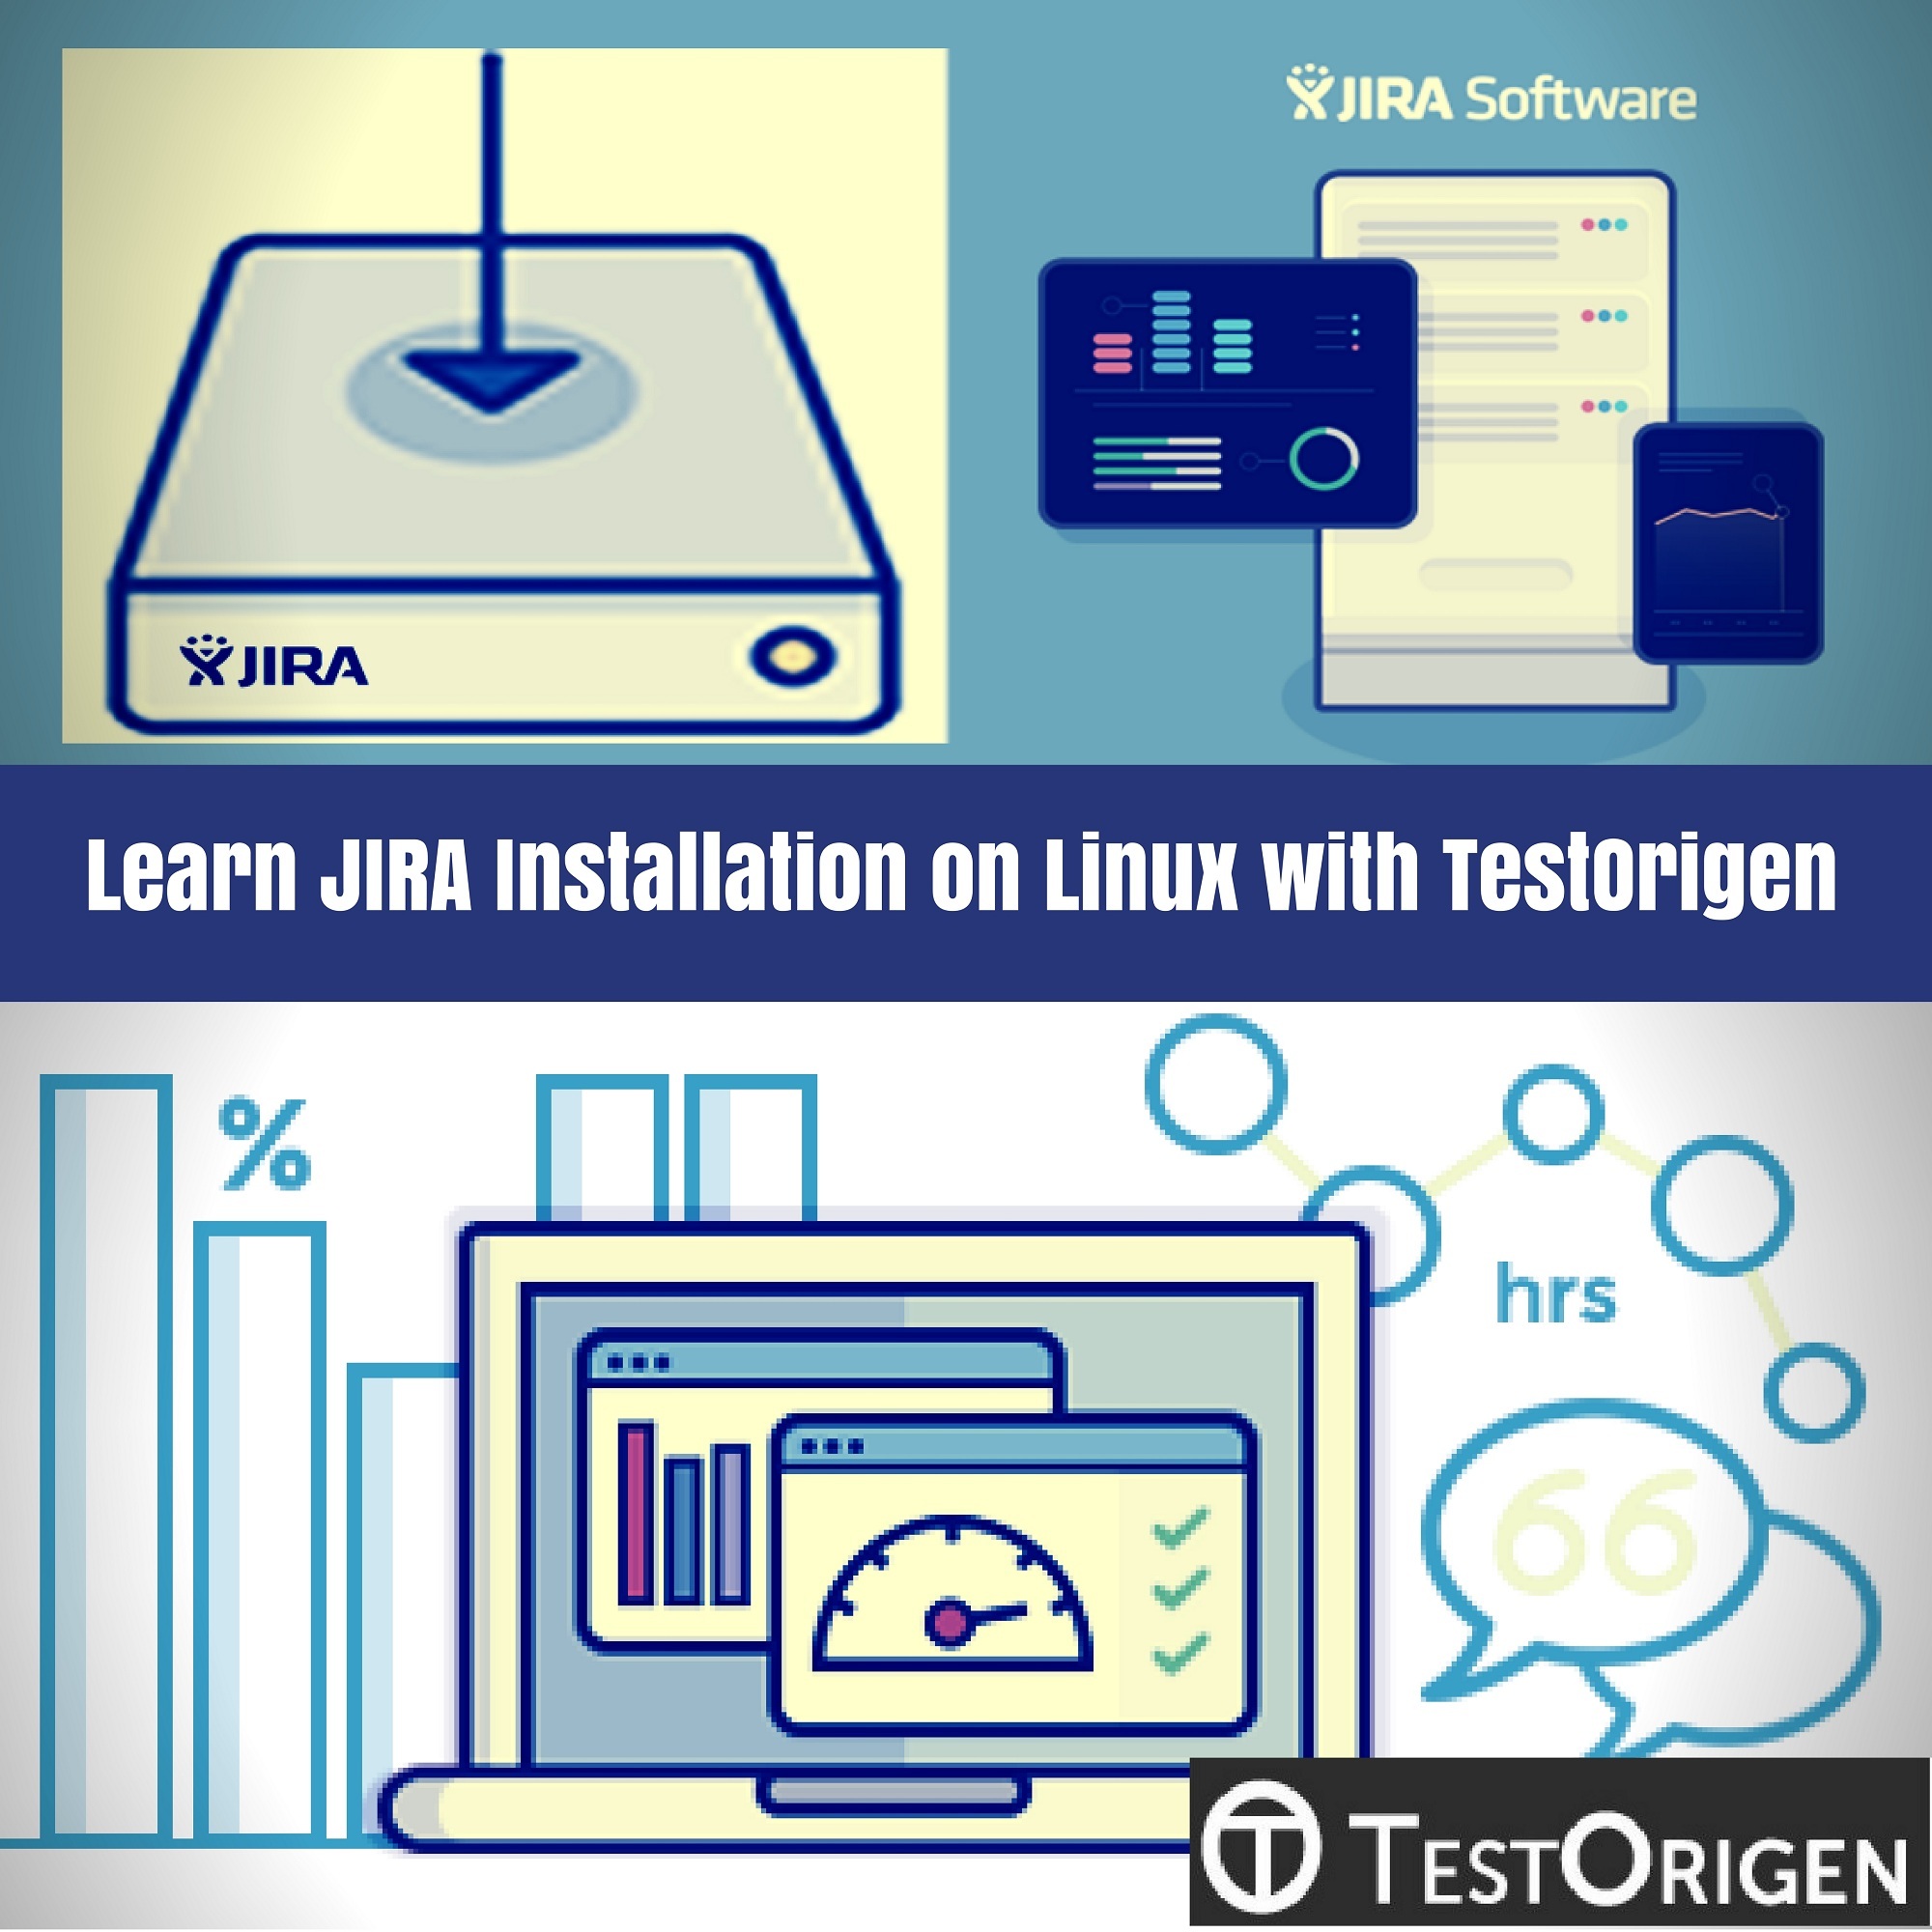 Learn JIRA Installation on Linux with TestOrigen